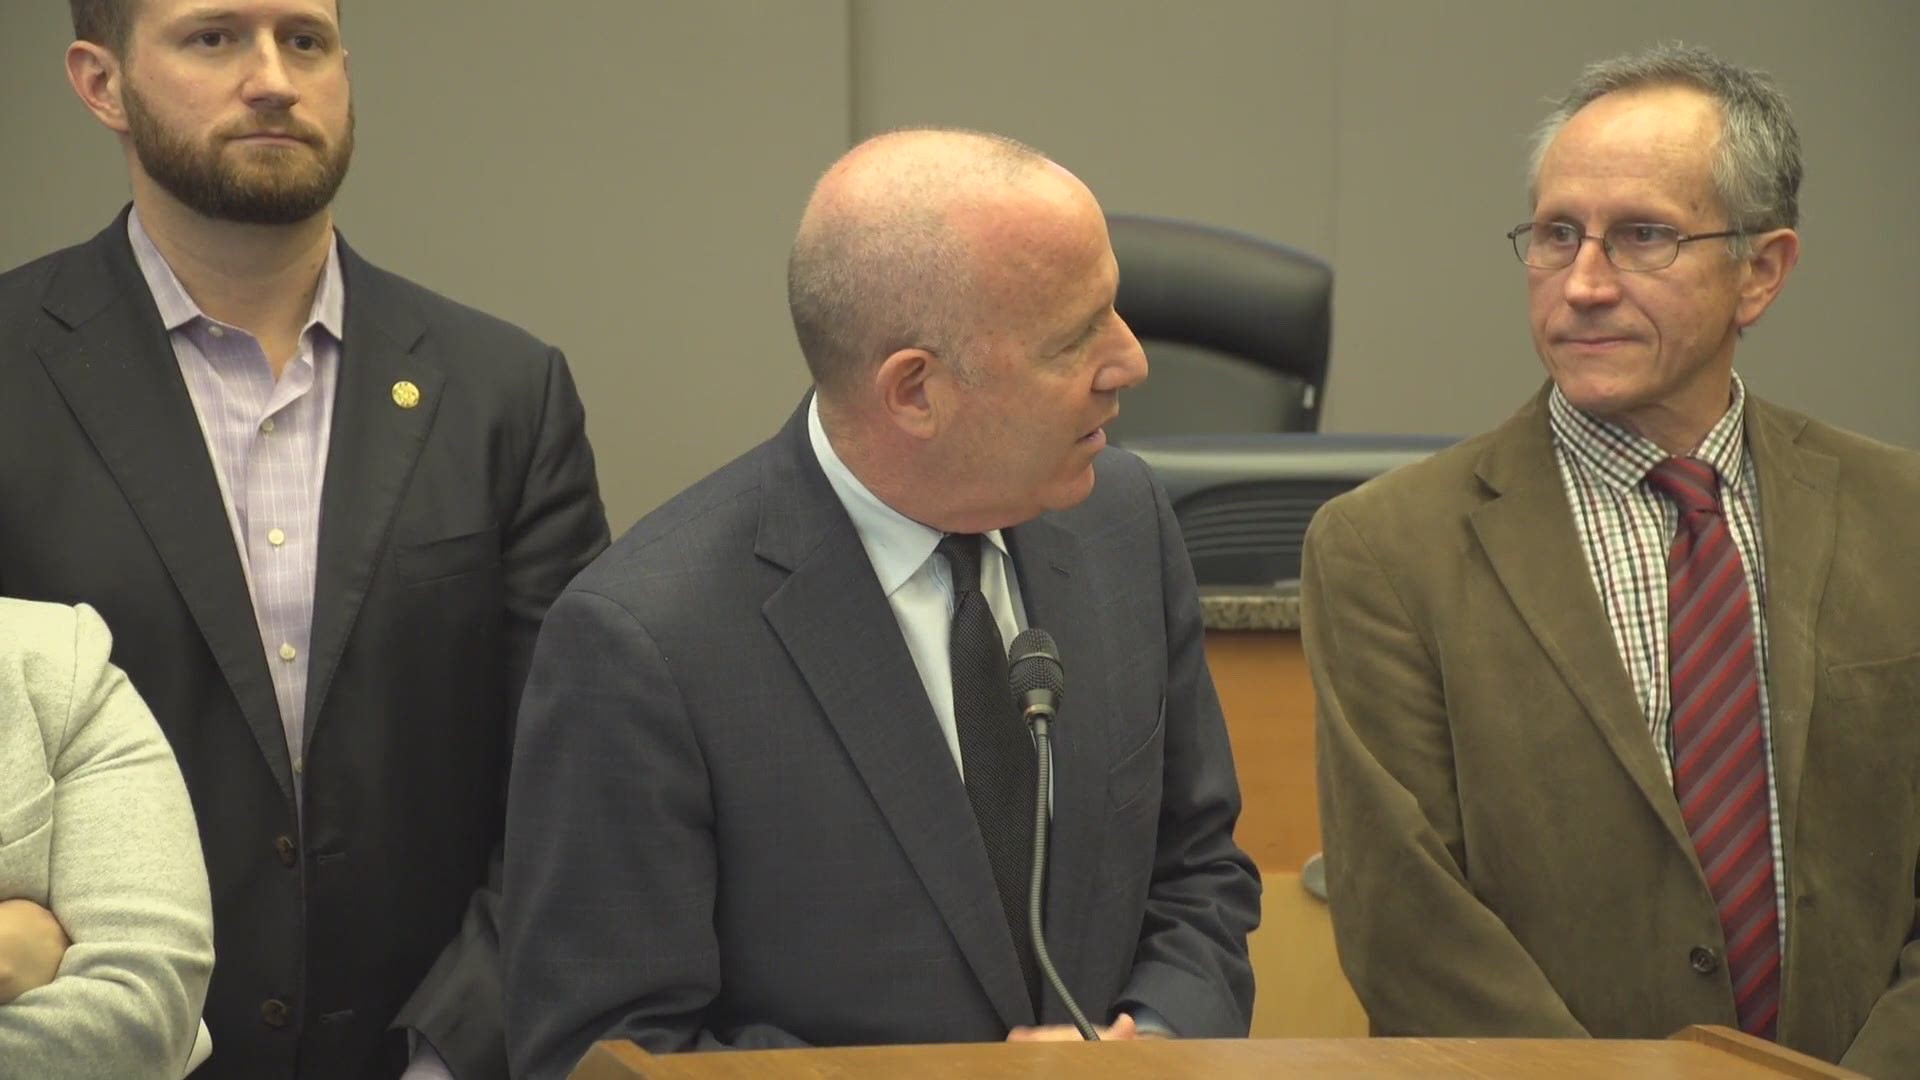 VIDEO: Mayor Steinberg holds presser on Stephon Clark killing